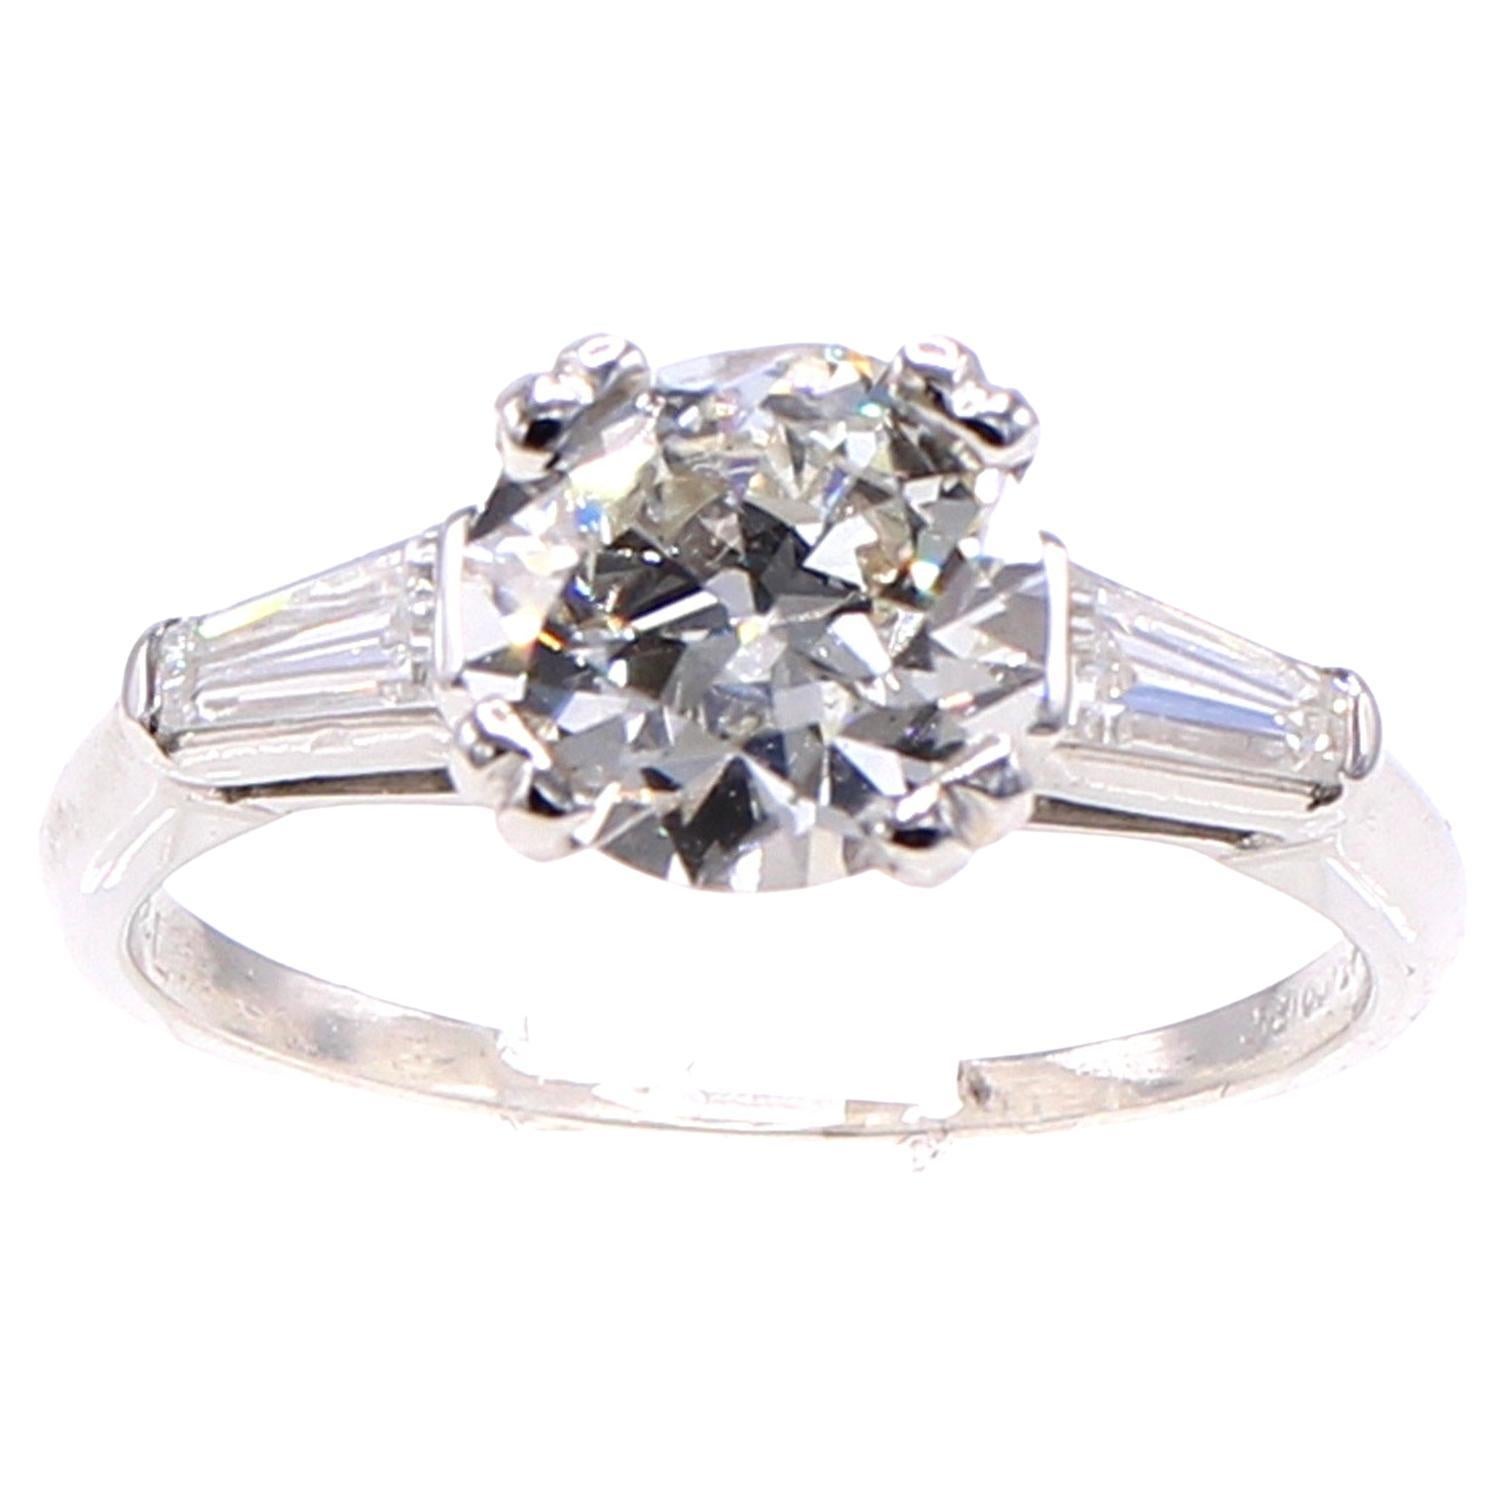 Old European Cut 1.62 Carat Diamond Engagement Ring 